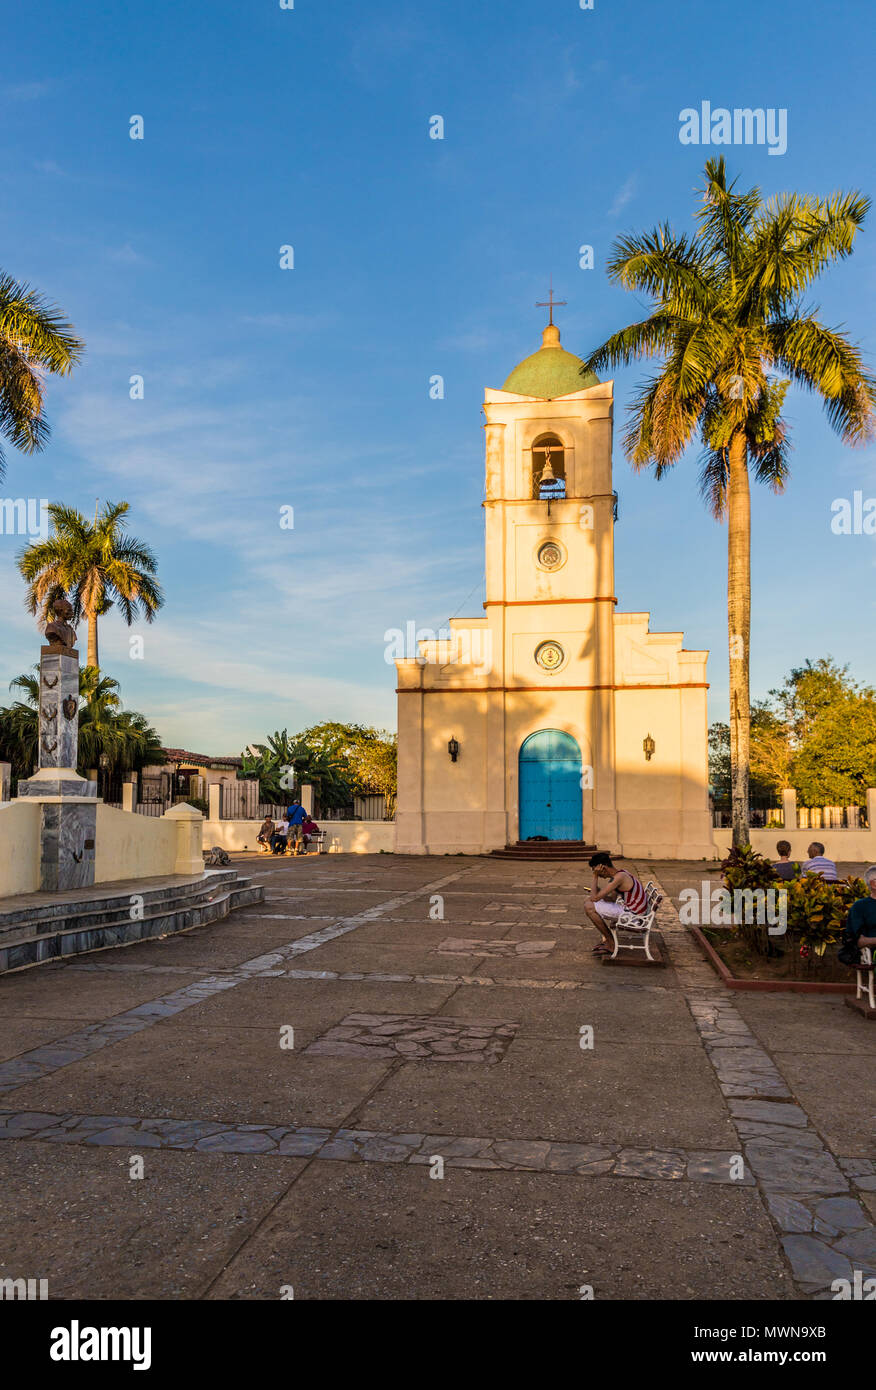 Une vue de l'église de Corazon, dans la région de Vinales, Cuba. Banque D'Images